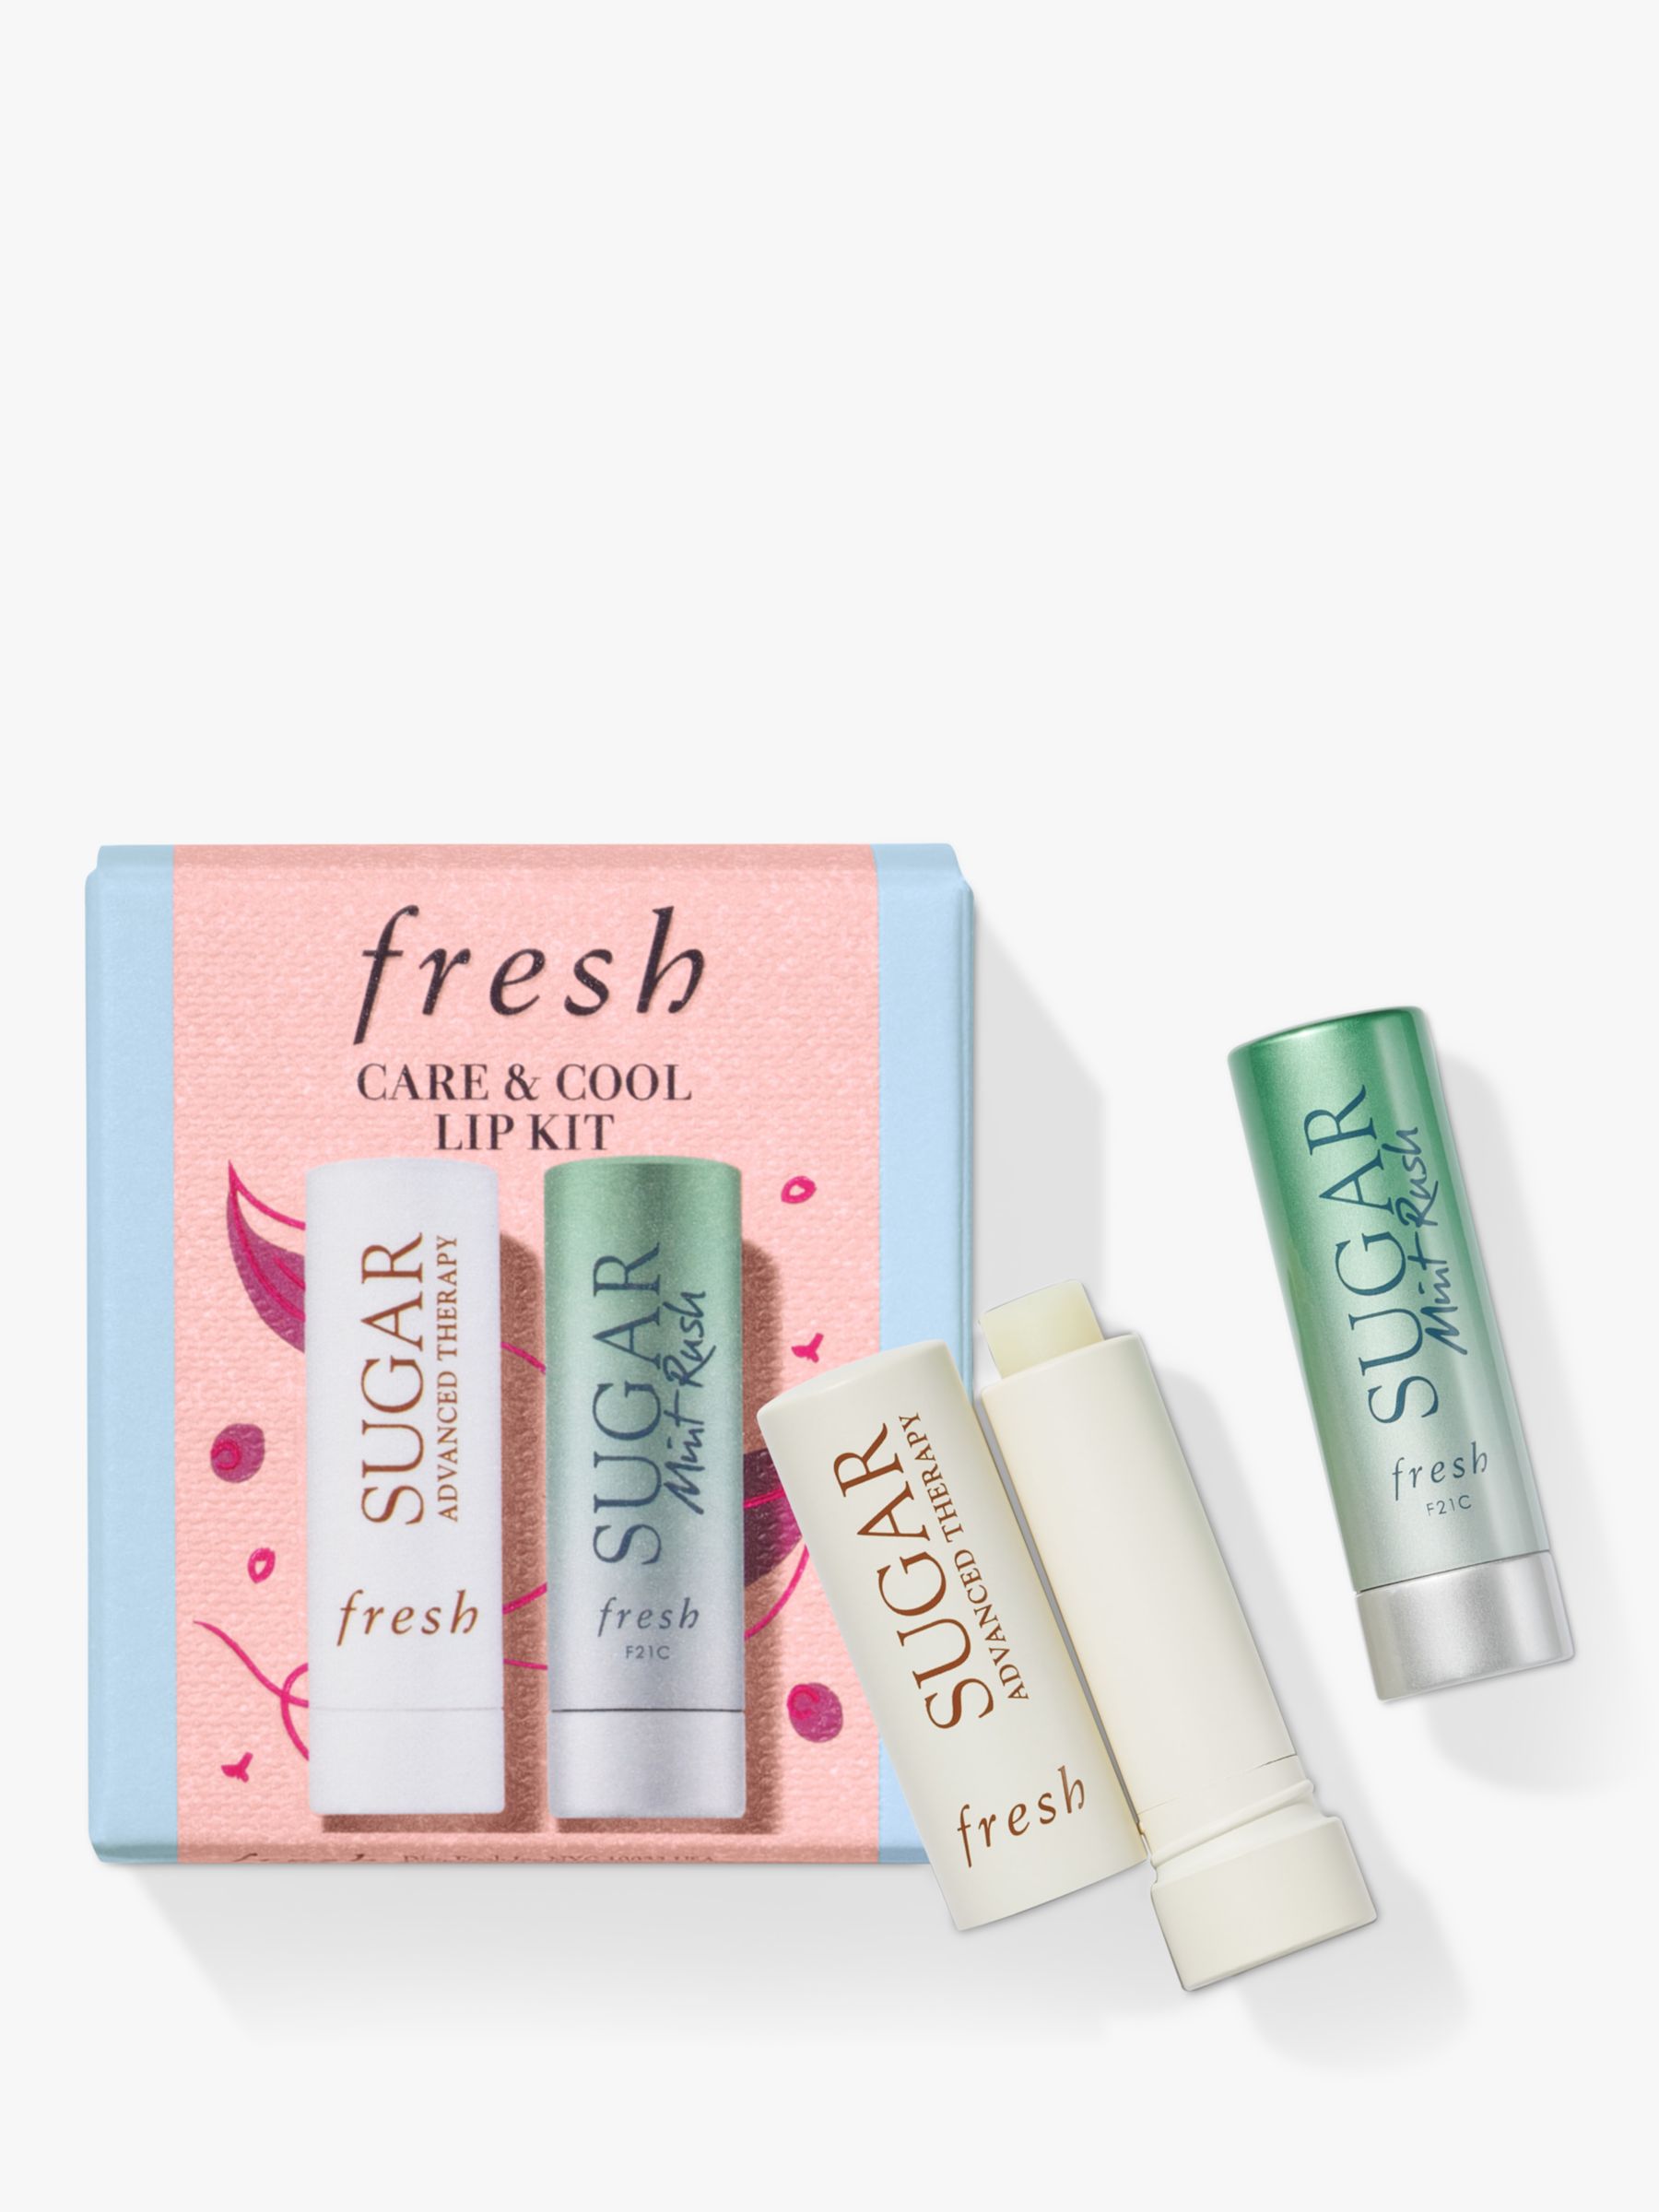 Fresh Care & Cool Lip Kit Skincare Gift Set